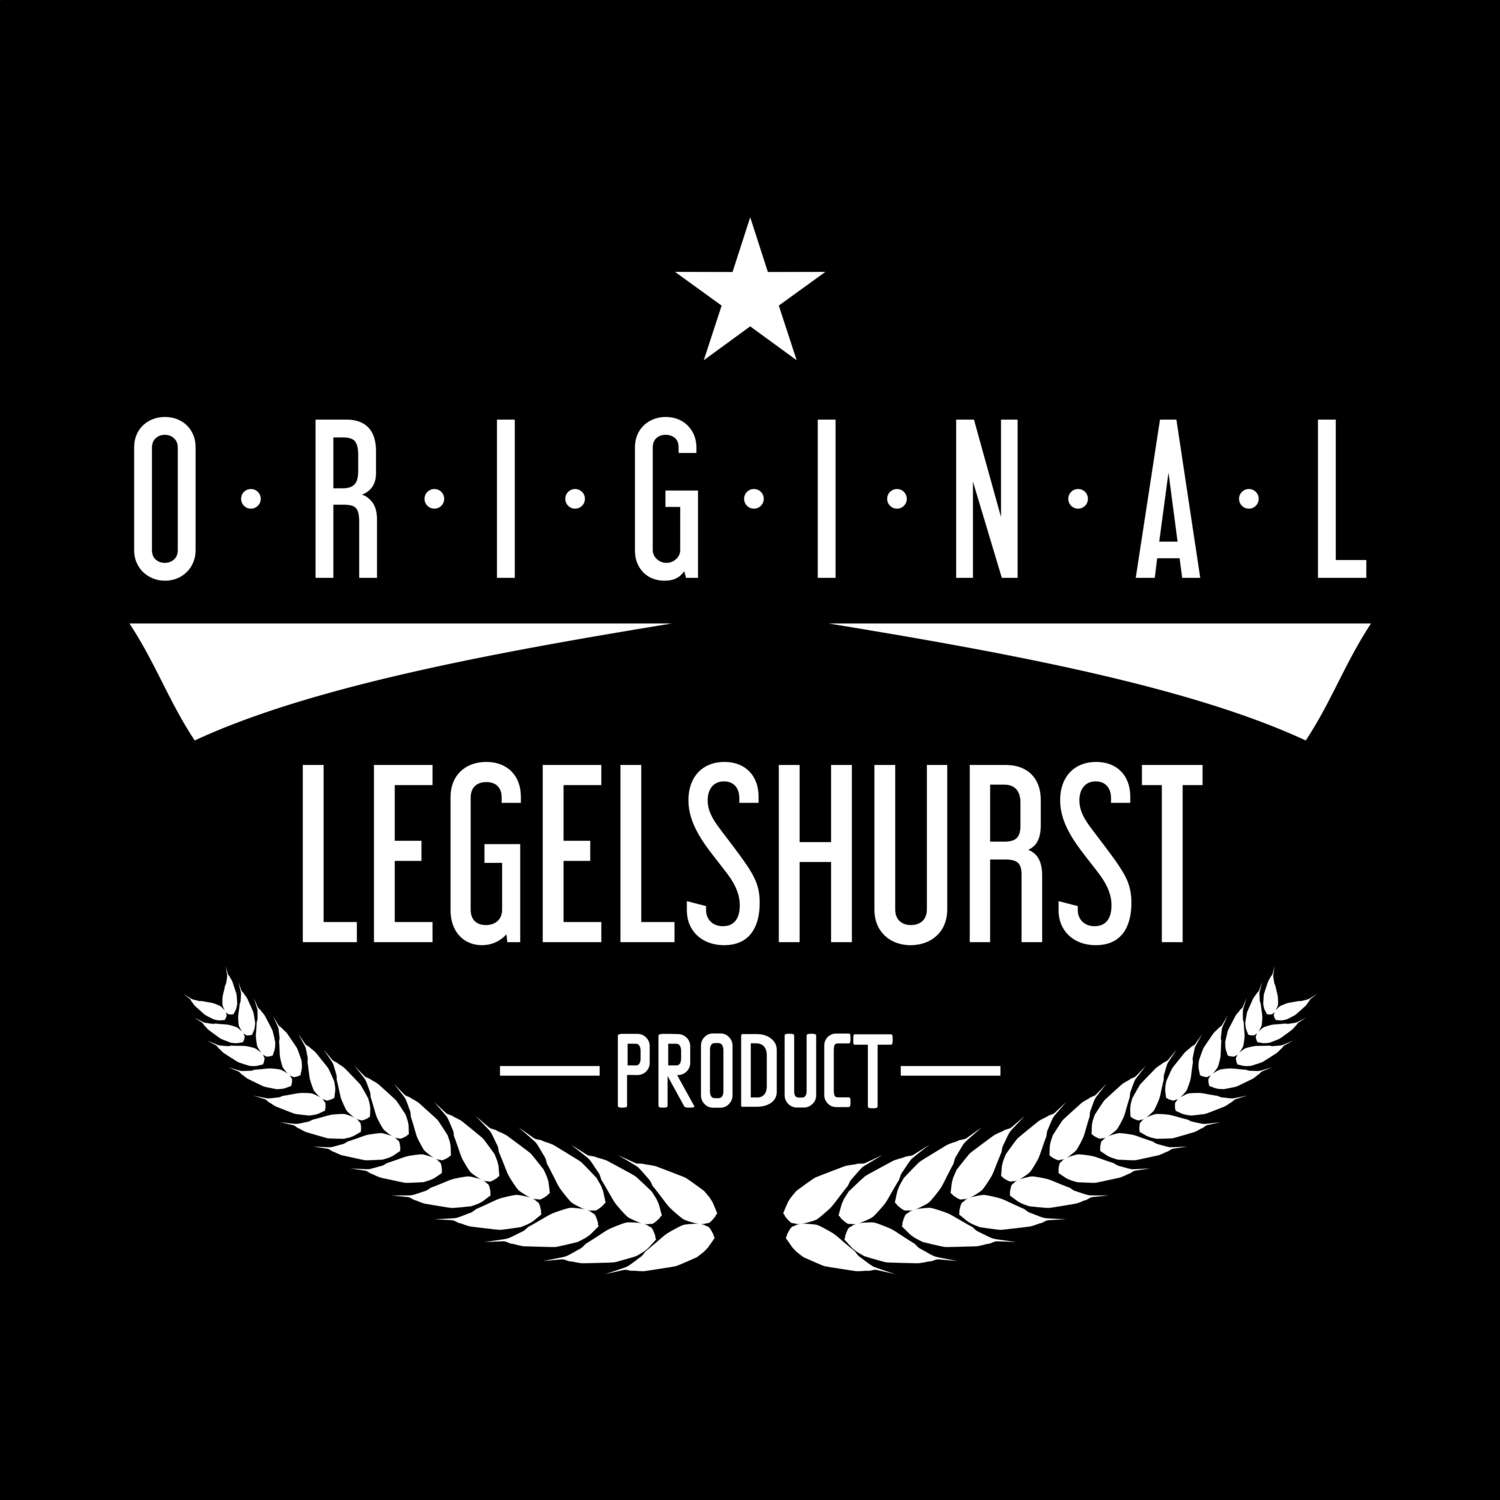 Legelshurst T-Shirt »Original Product«